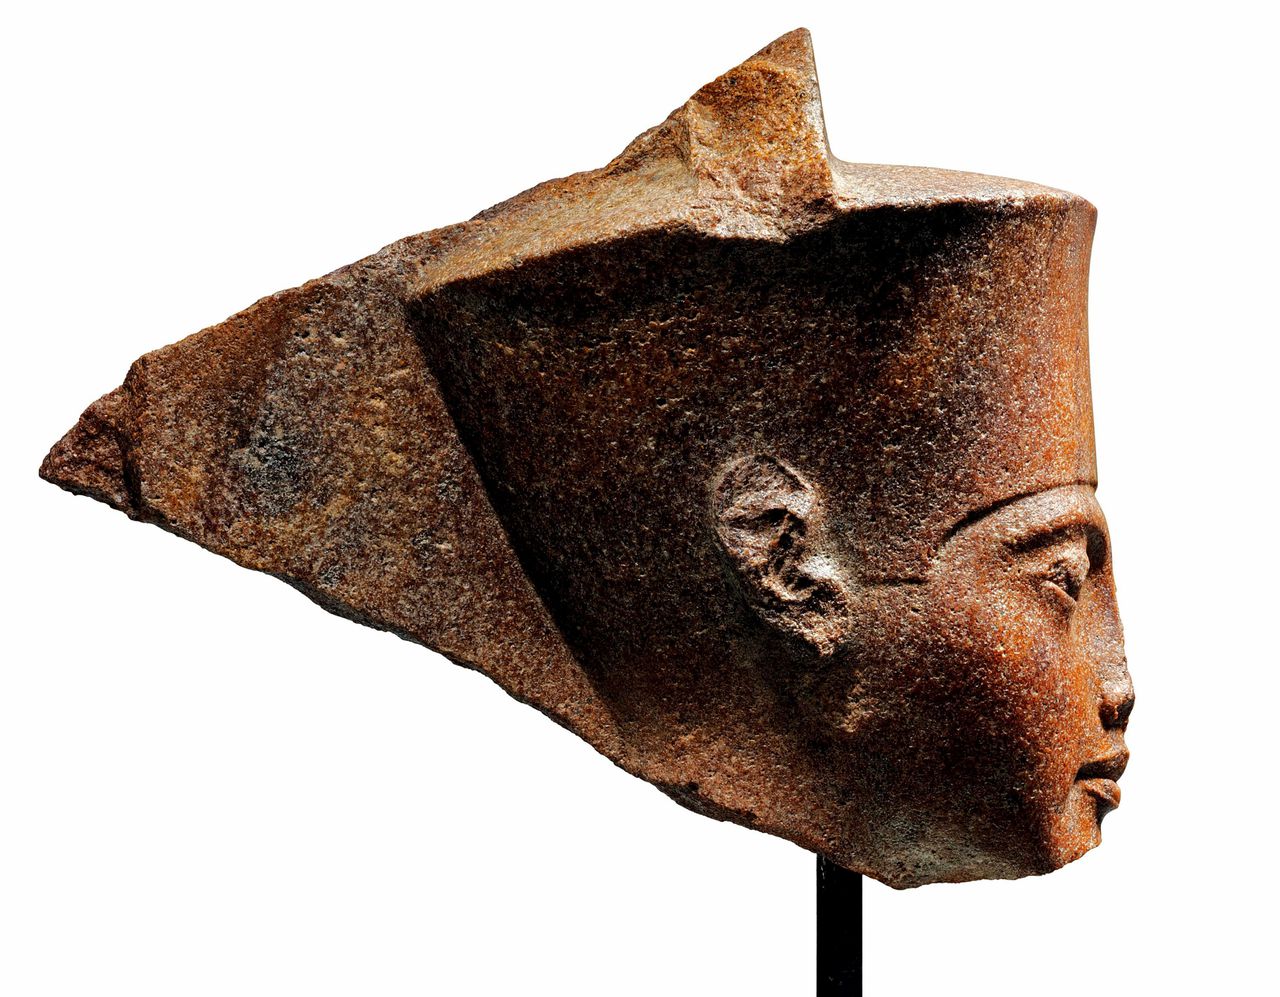 Het 28,5 cm hoge portret van steen van farao Toetanchamon dat Christie's donderdag veilde. Egypte claimt dat het illegaal verhandeld is.